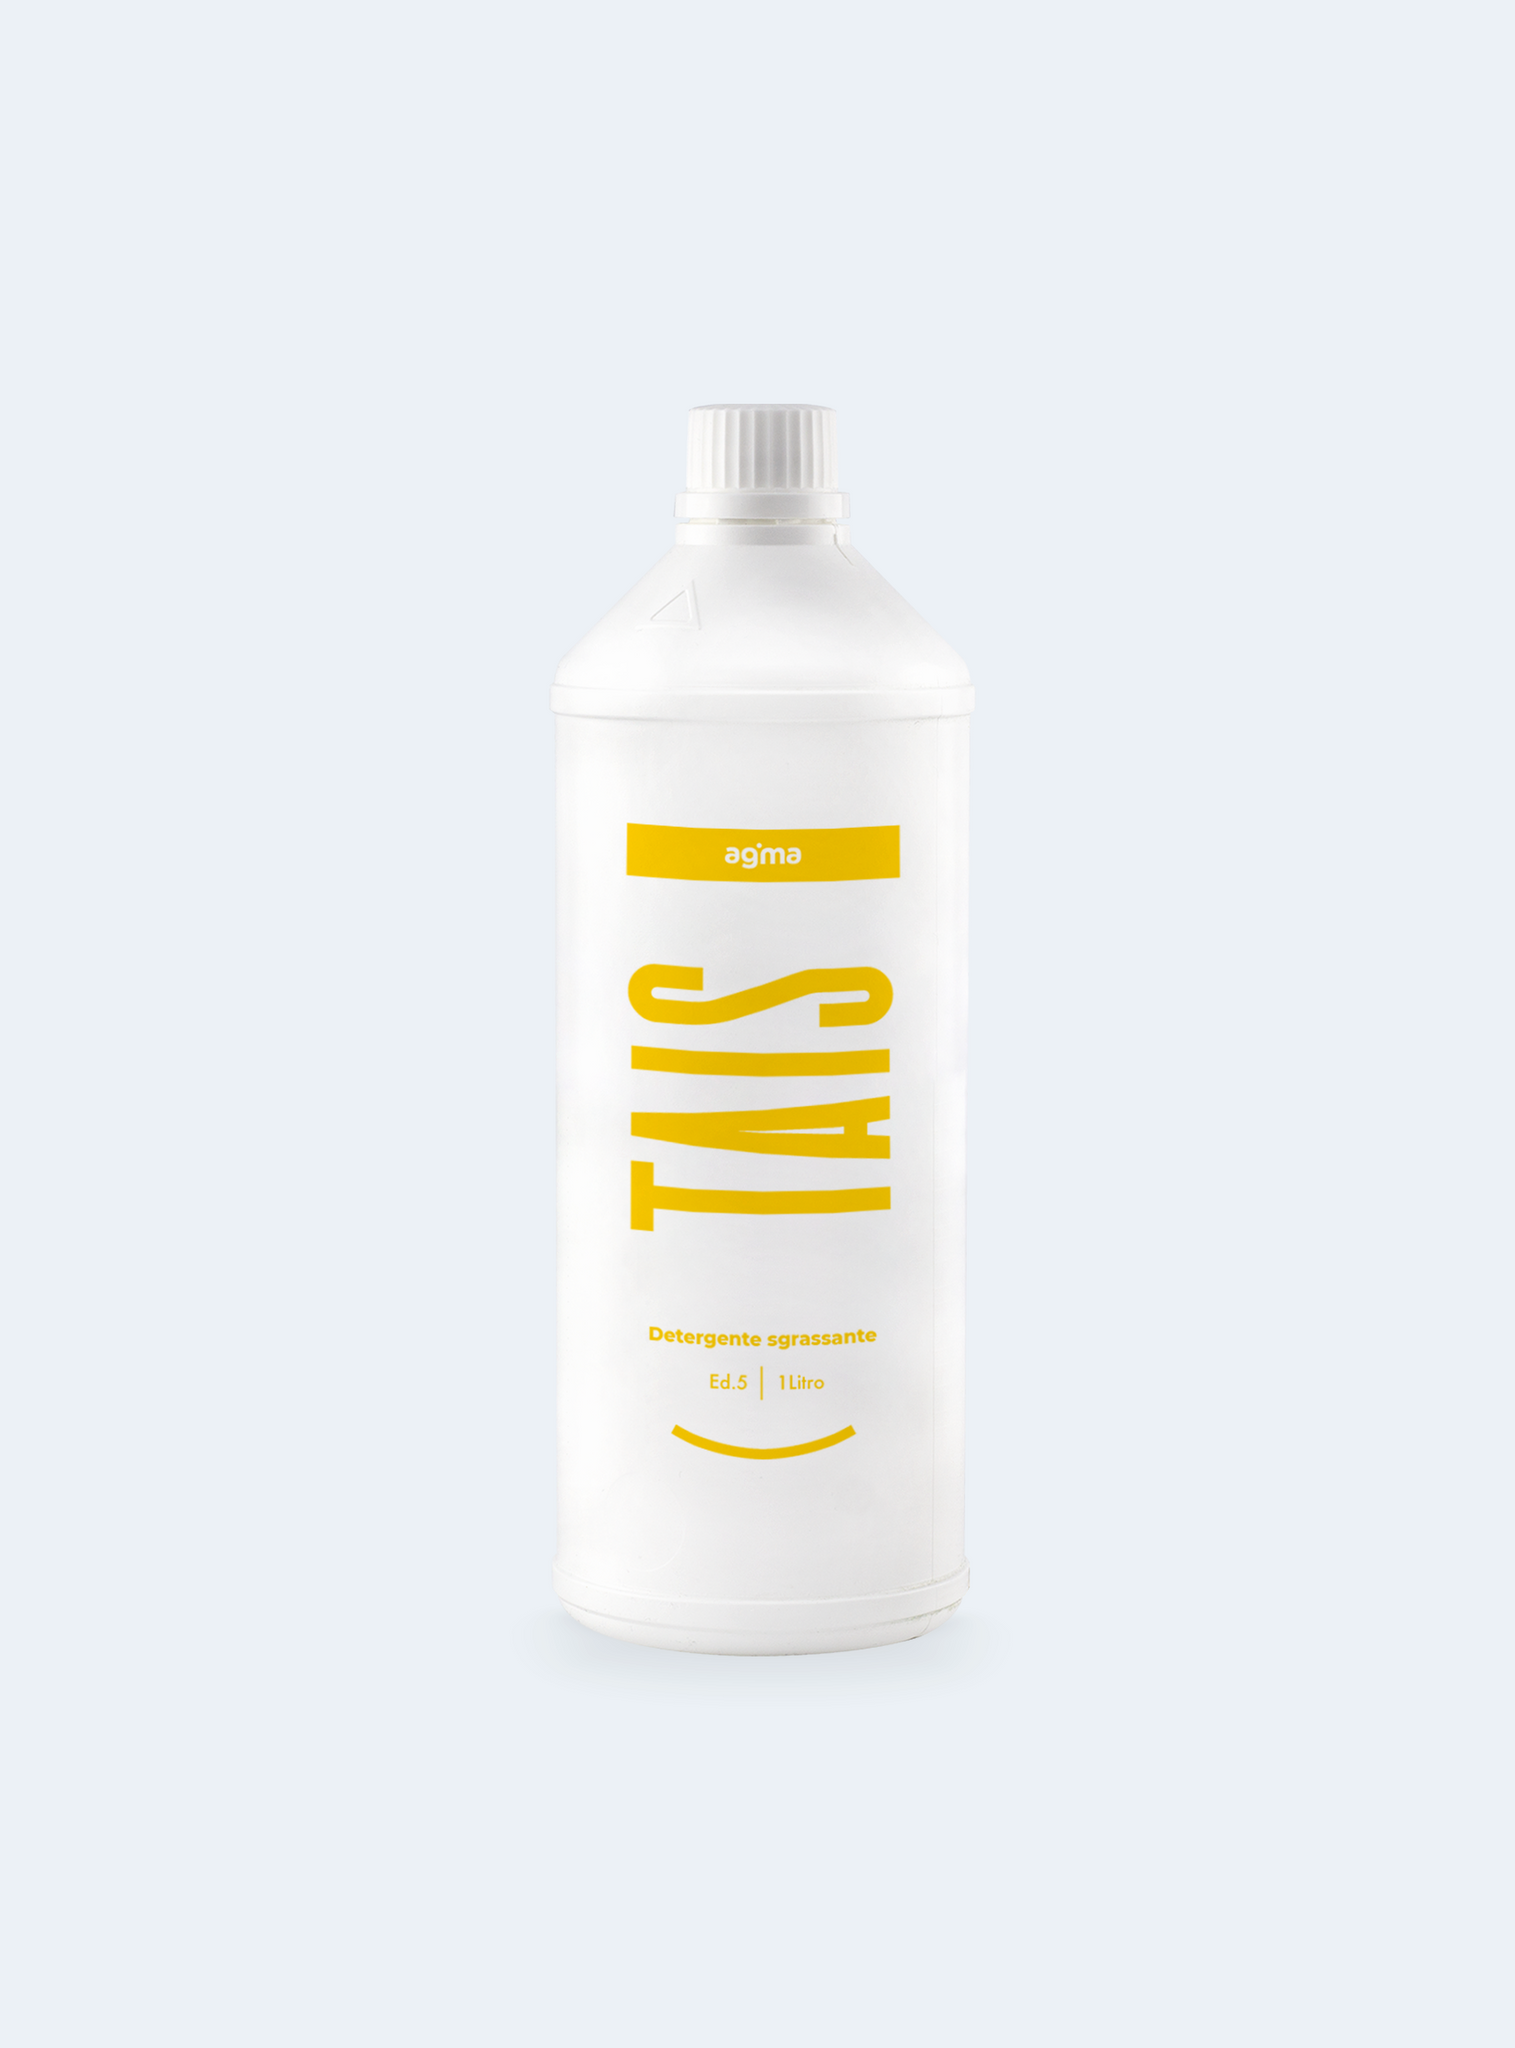 Tais - Detergente Sgrassante 1 litro